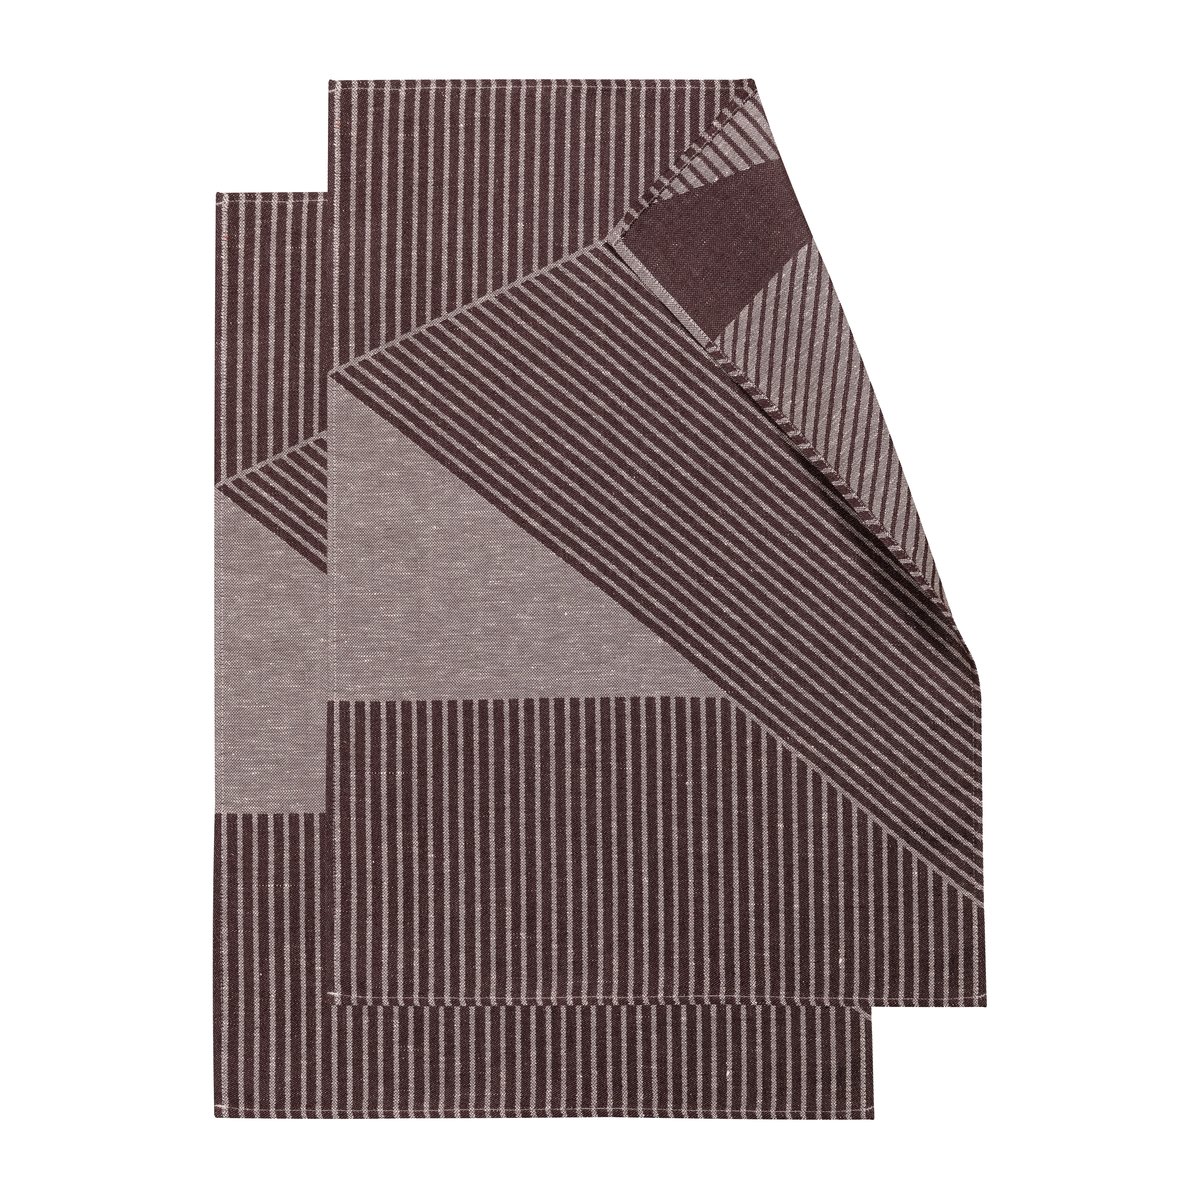 NJRD Stripes keittiöpyyhe 47×70 cm 2-pack Ruskea-valkoinen